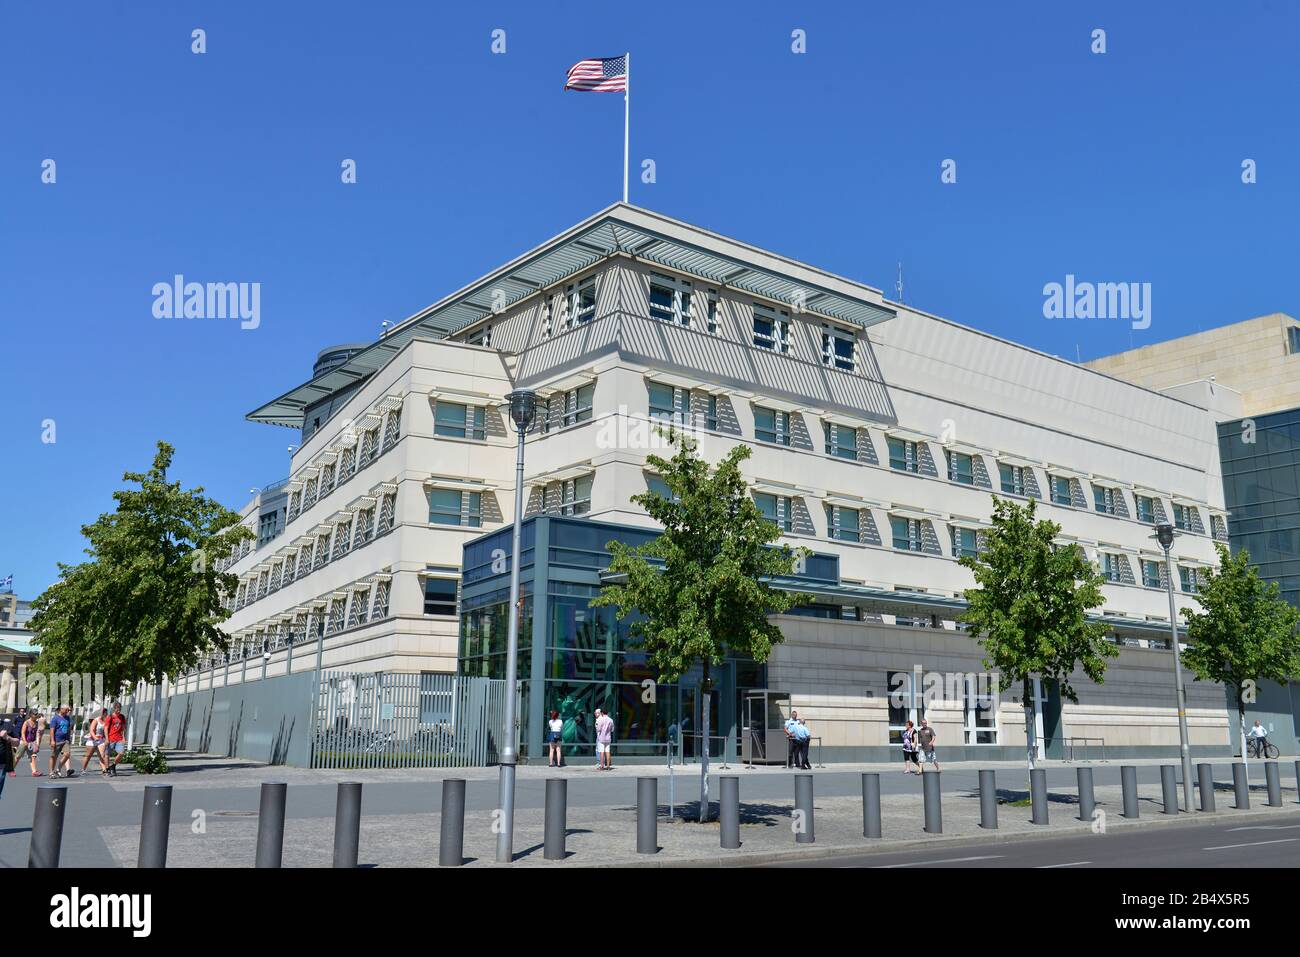 Botschaft der Vereinigten Staaten von Amerika, Ebert Strasse, Mitte, Berlin, Deutschland Banque D'Images